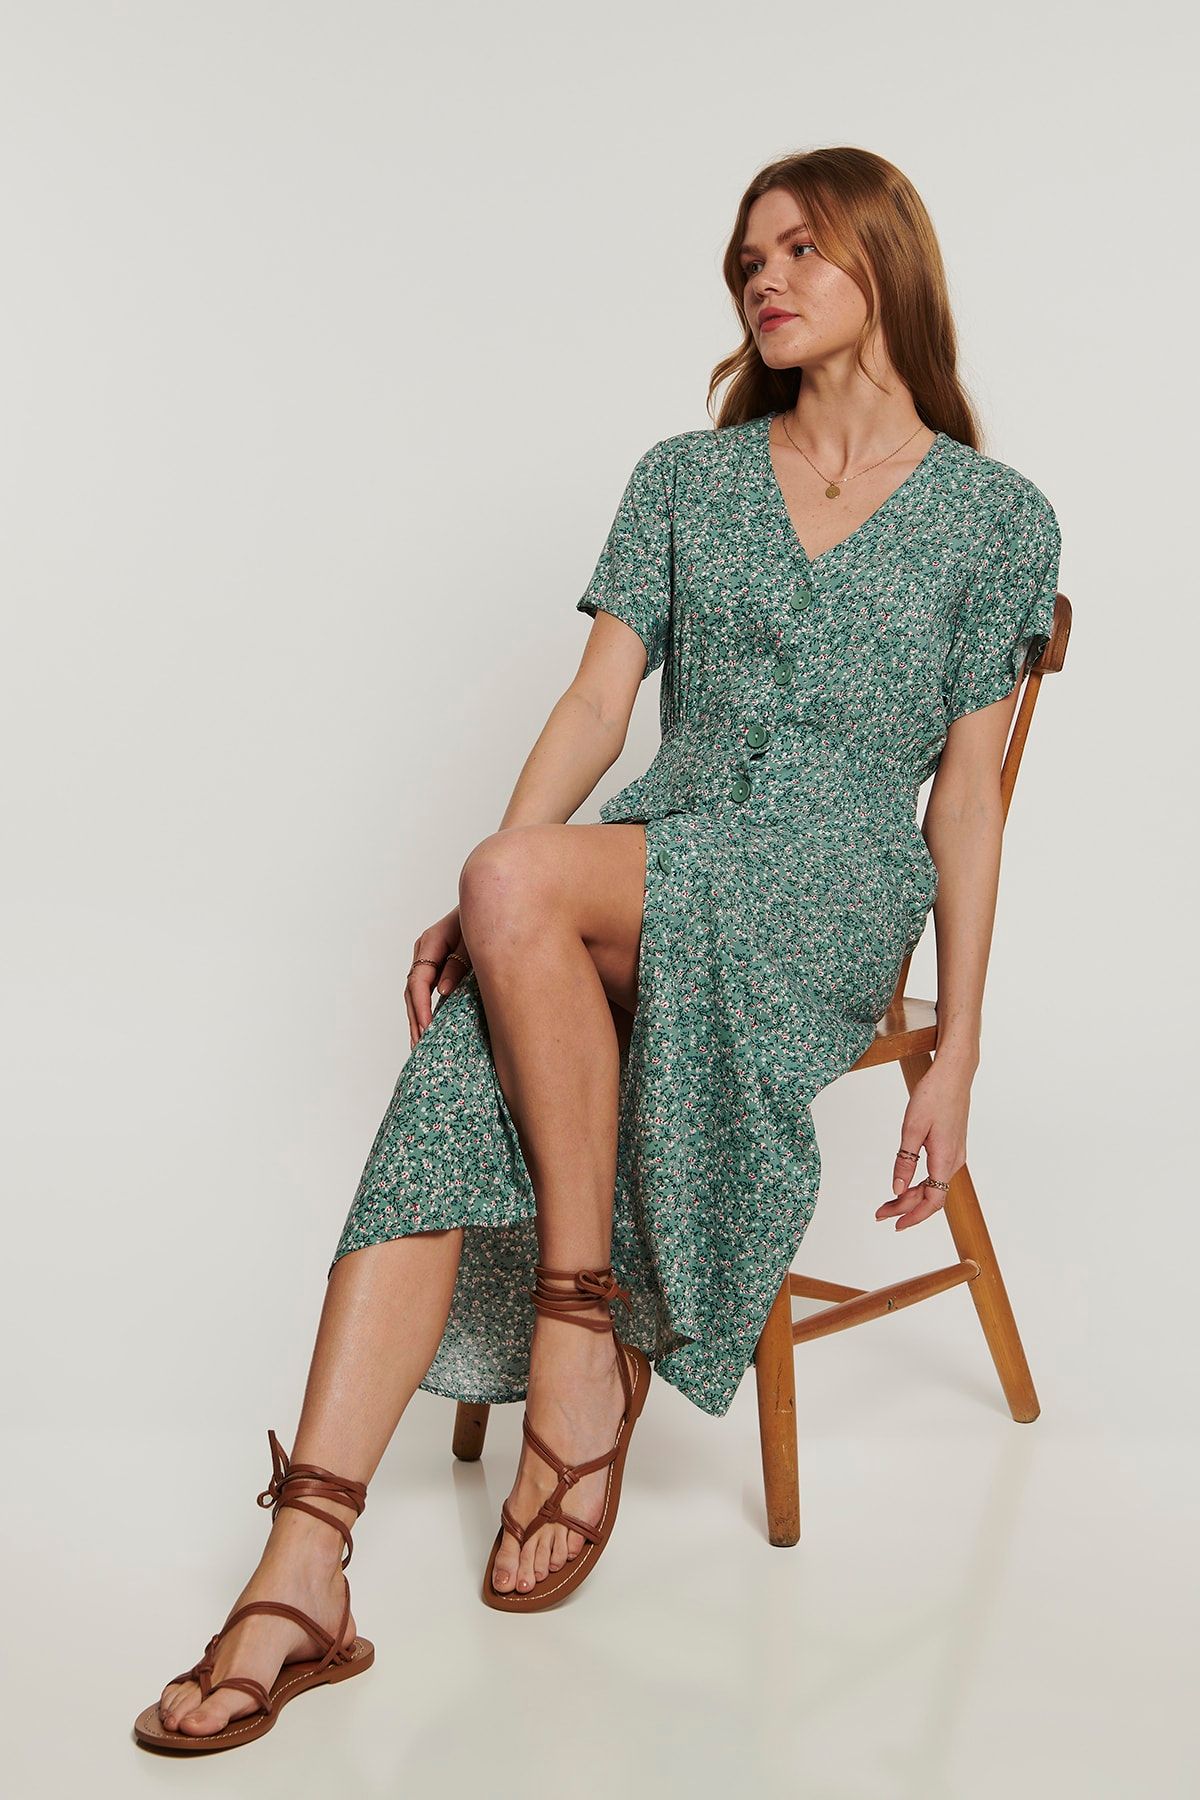 Lyn Devon Fancy Çiçekli Elbise - Yeşil